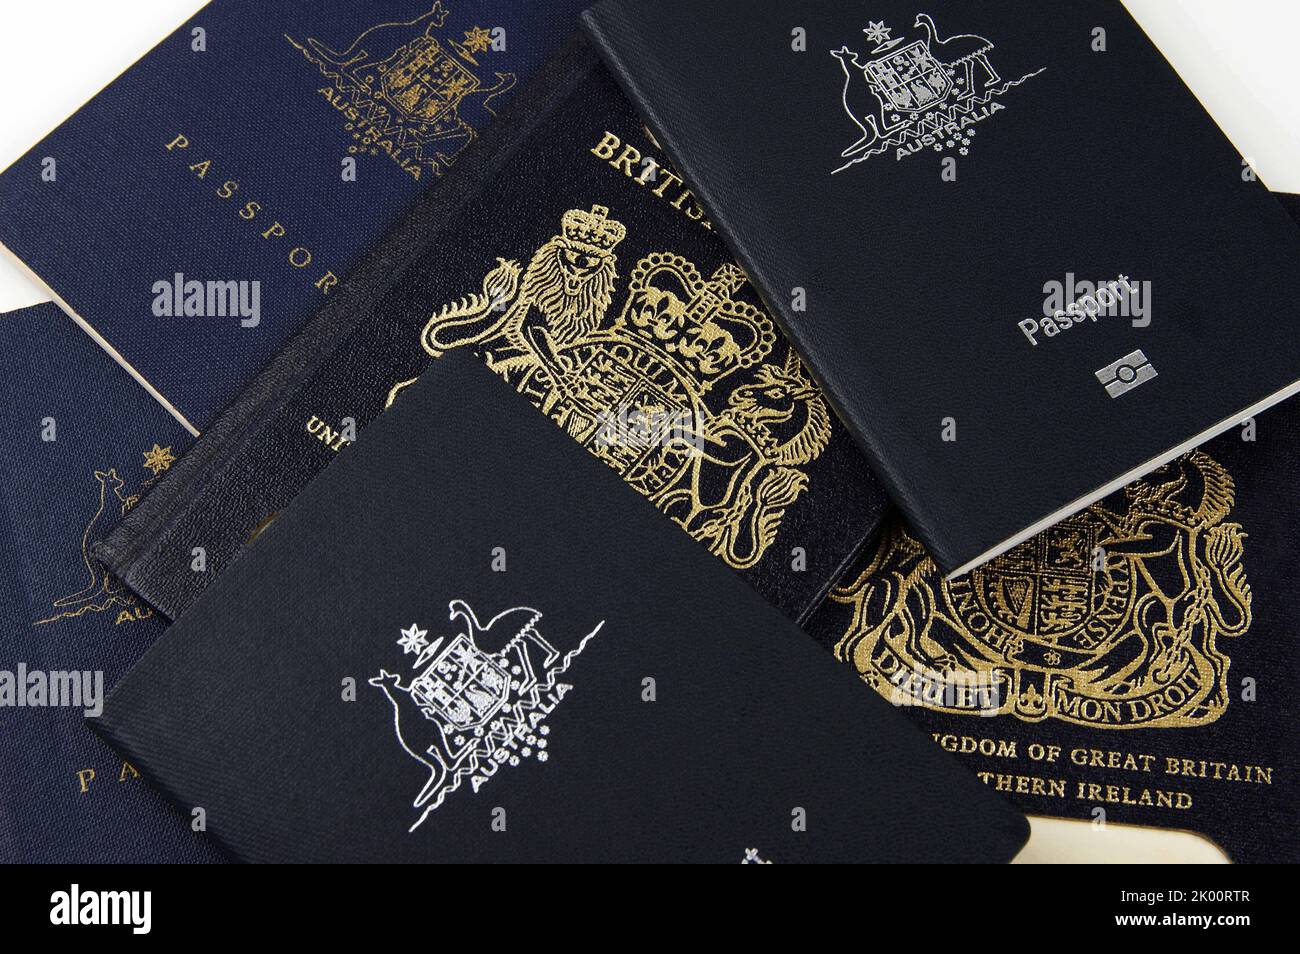 anciens et nouveaux passeports australiens et britanniques Banque D'Images